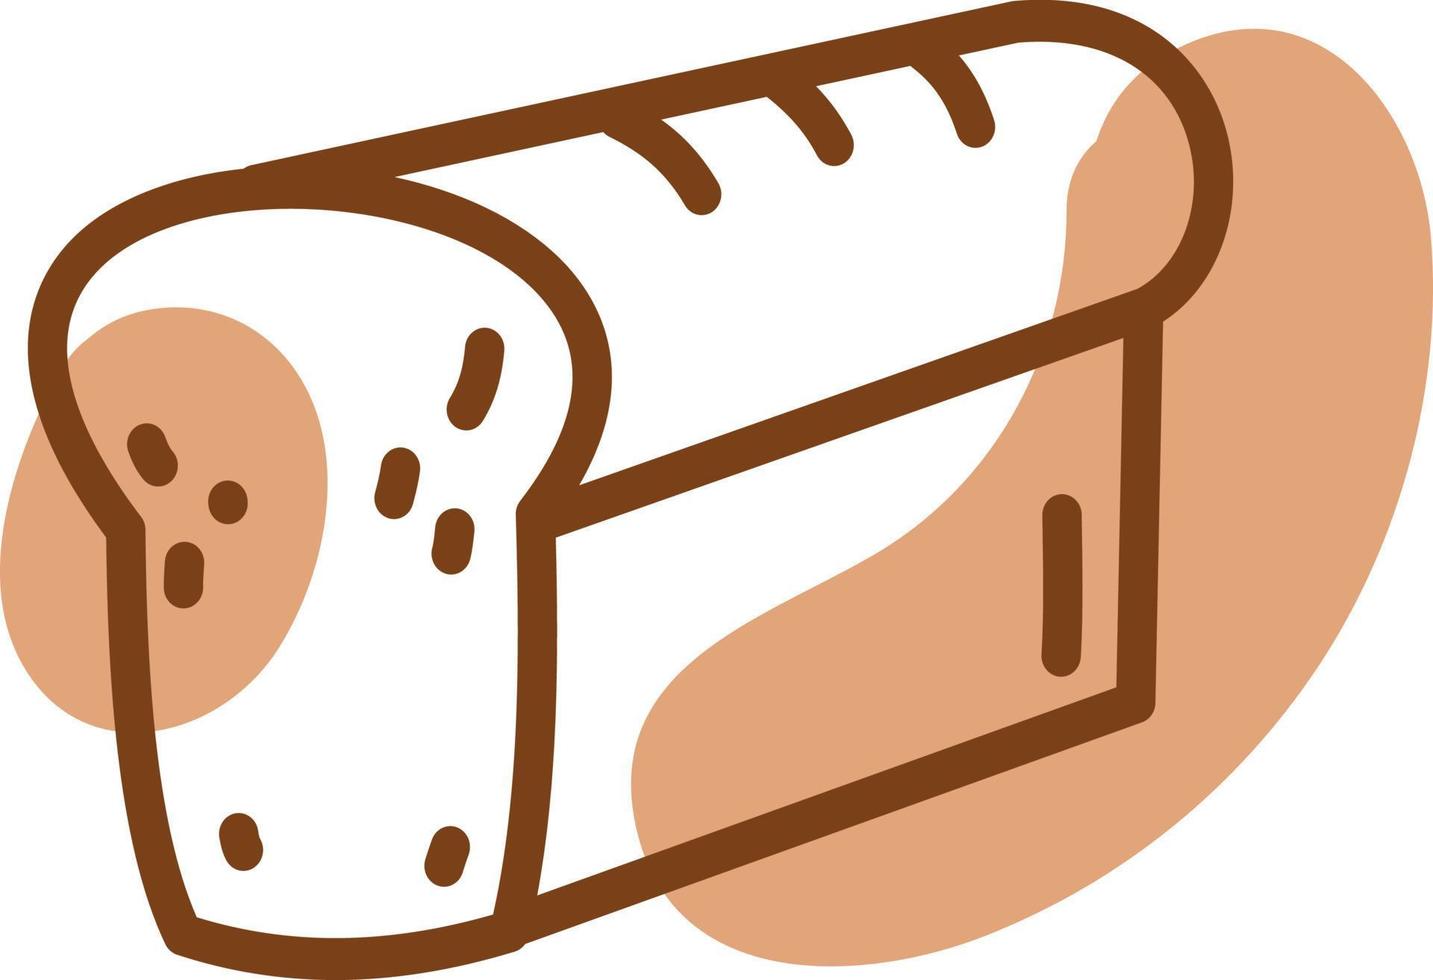 miche de pain, illustration, vecteur, sur un fond blanc. vecteur